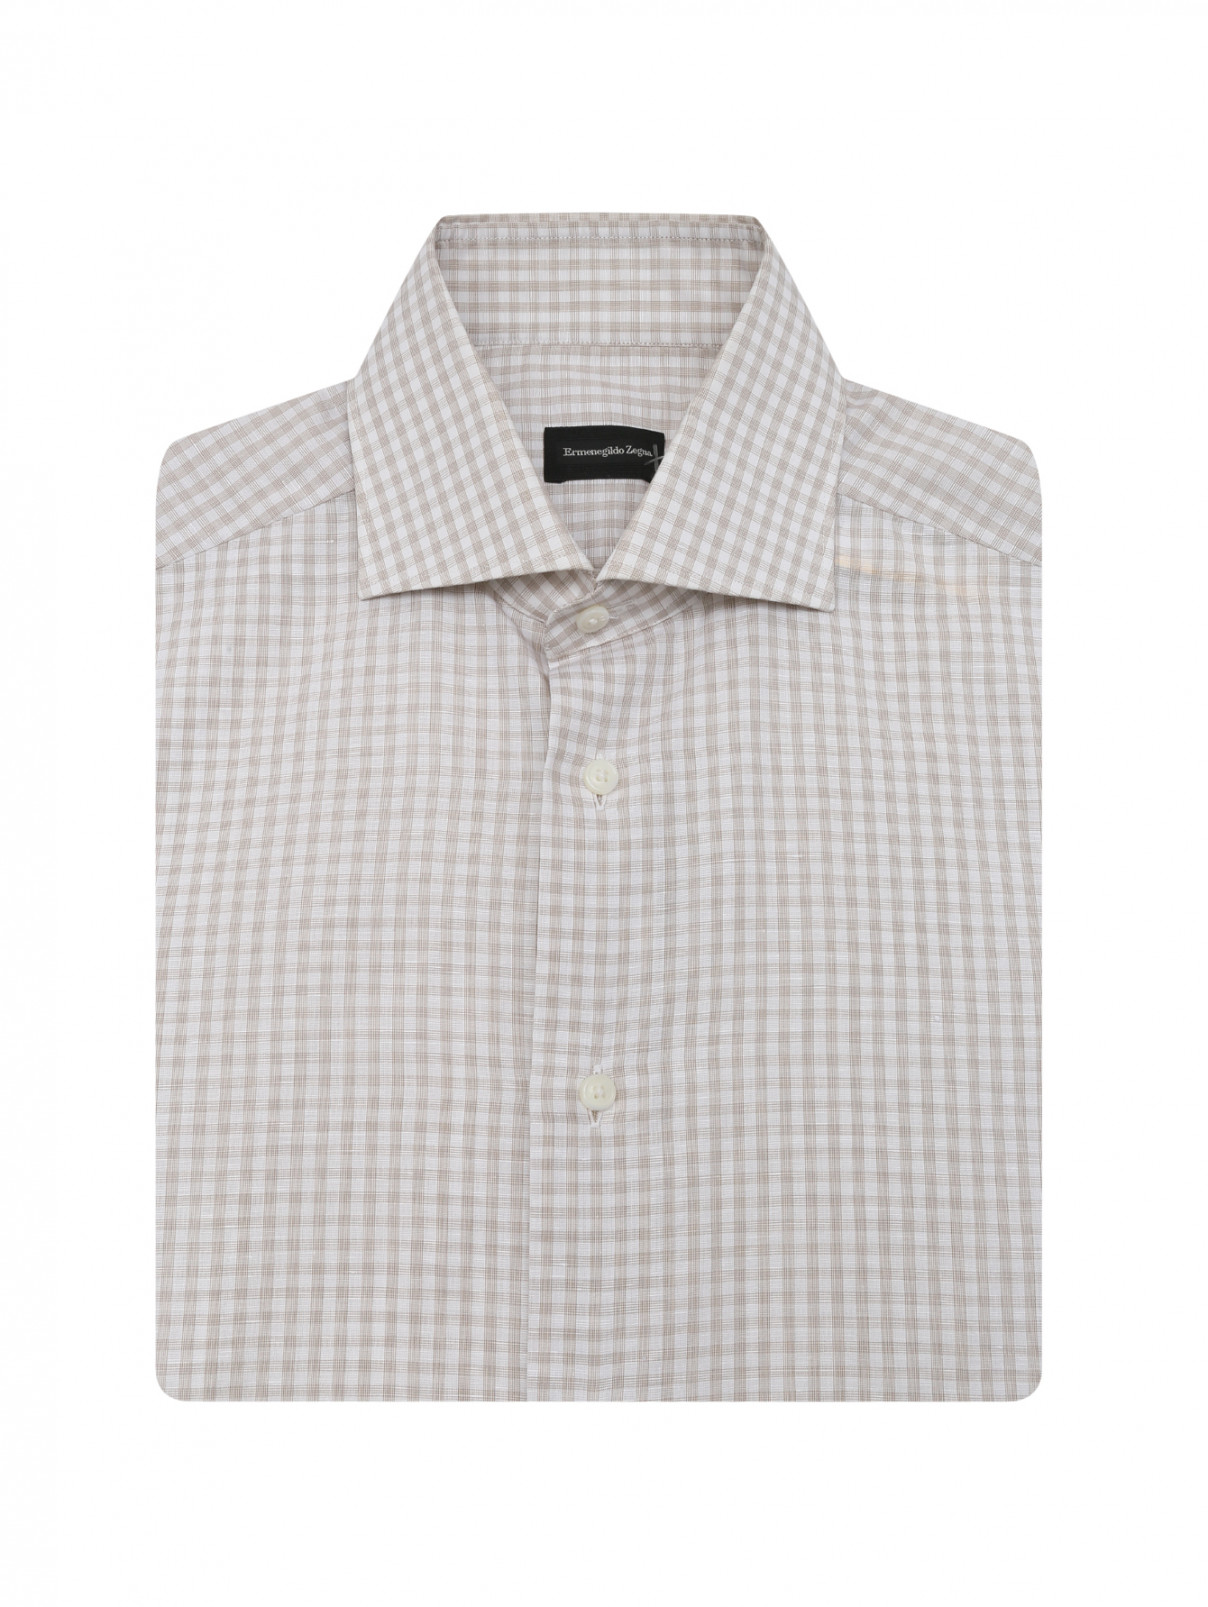 Рубашка короткий рукав  из хлопка  и льна с узором "клетка" Ermenegildo Zegna  –  Общий вид  – Цвет:  Бежевый